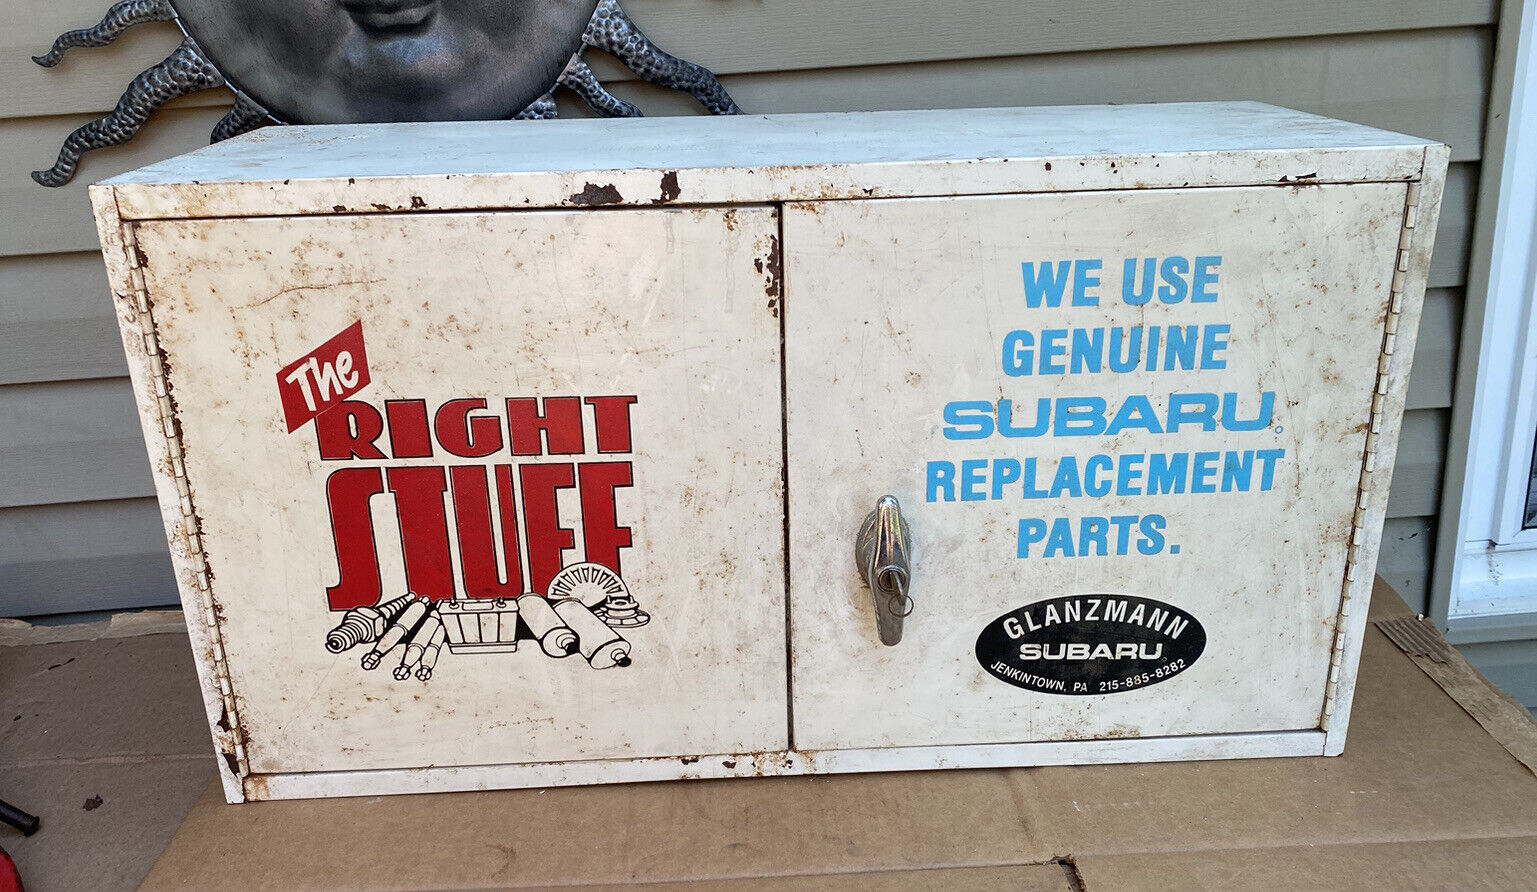 Vintage Auto Shop Parts Cabinet “The Right Stuff” Glanzmann Subaru Jenkintown PA